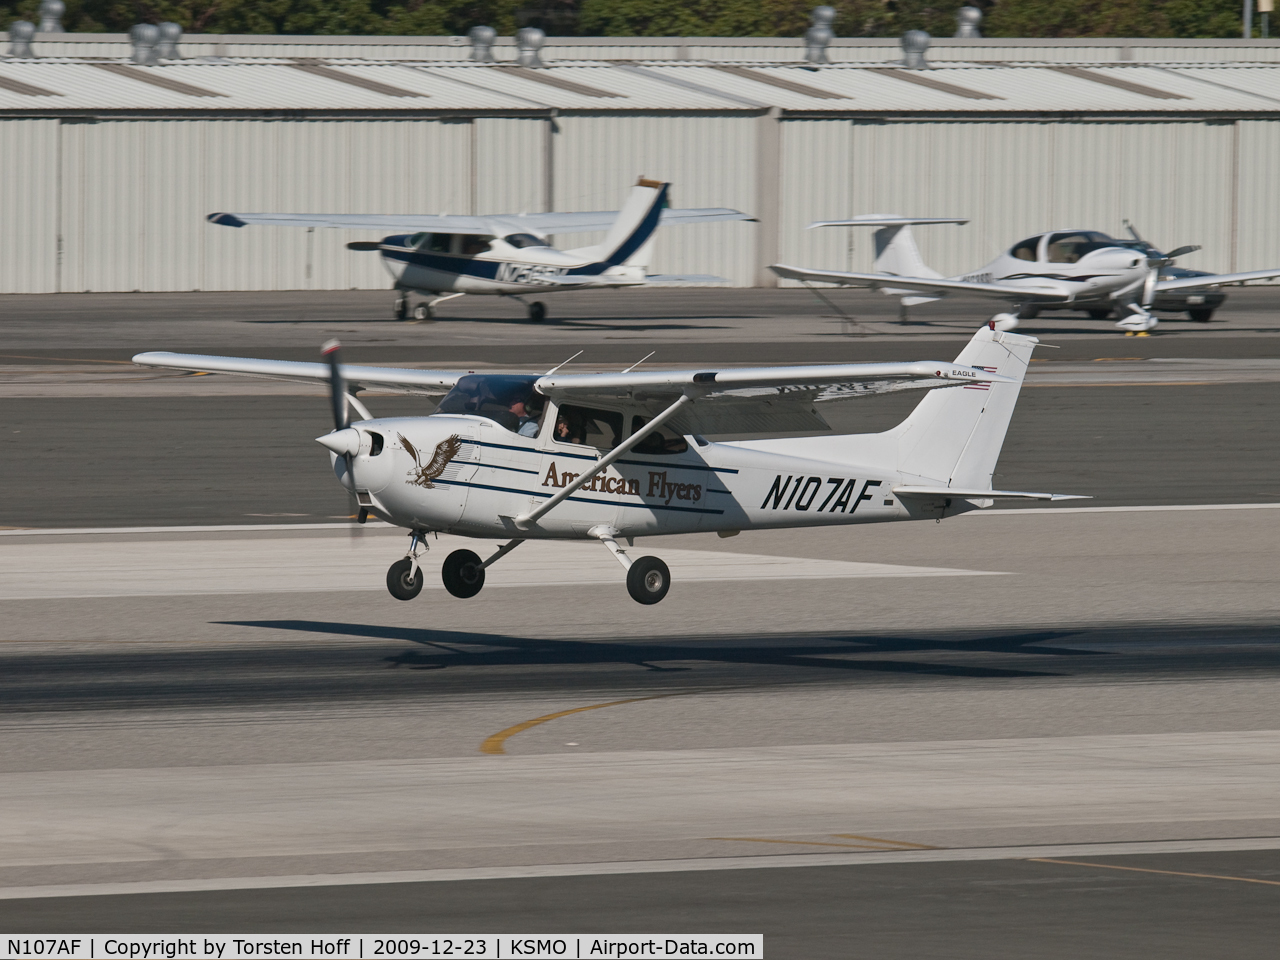 N107AF, 2001 Cessna 172R C/N 17281056, N107AF arriving on RWY 21